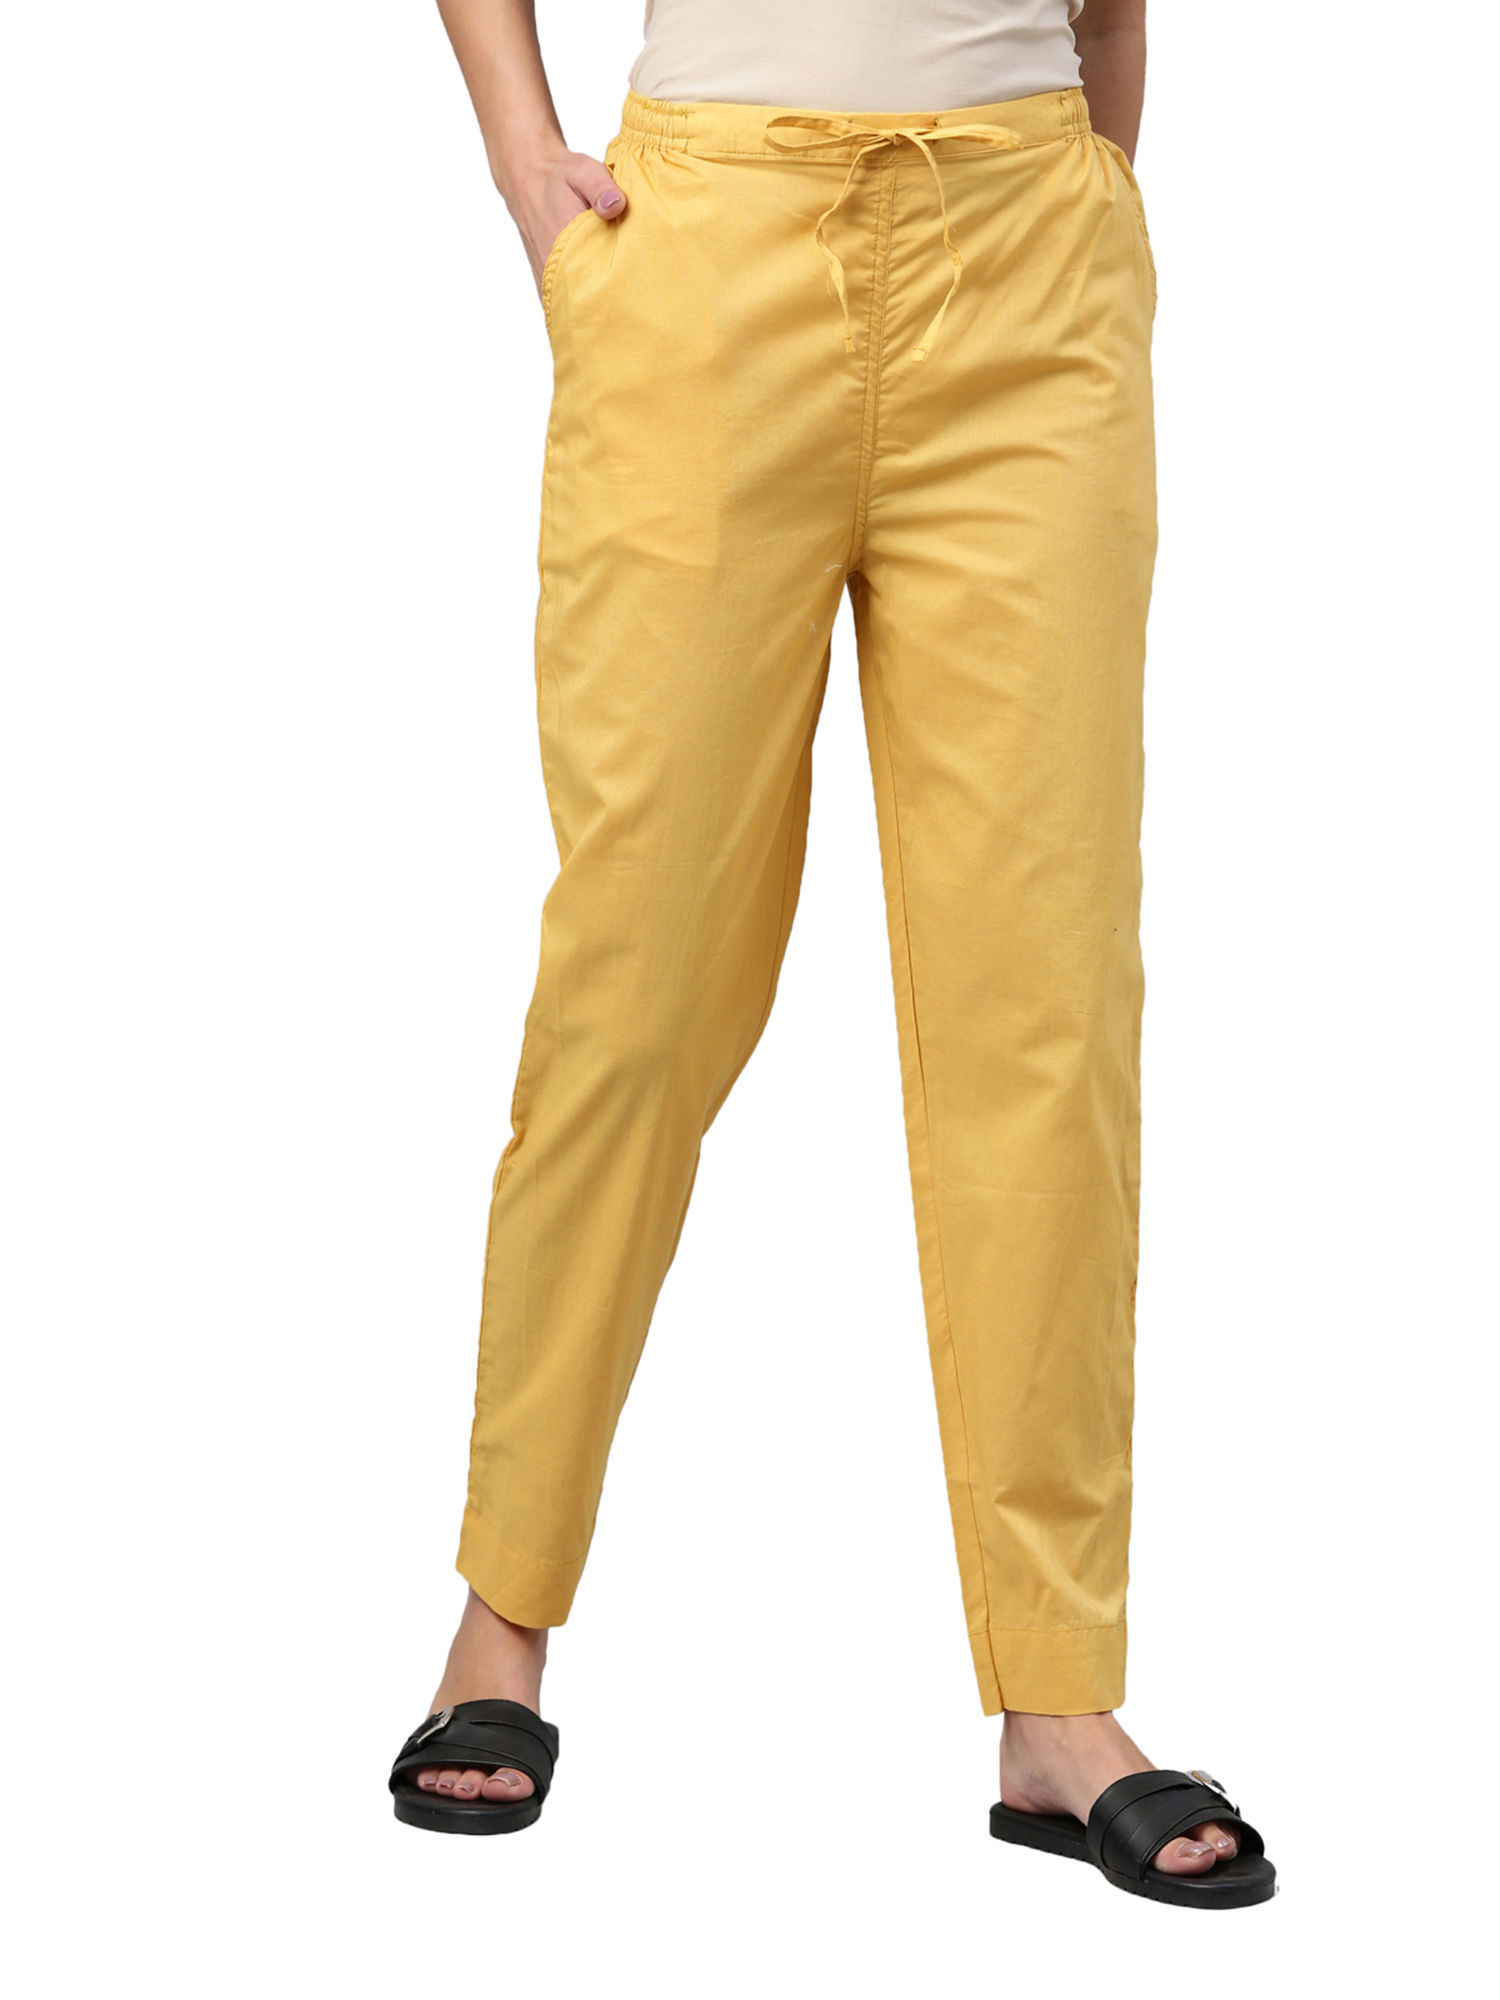 Buy Light Brown Trousers  Pants for Women by Oxxo Online  Ajiocom